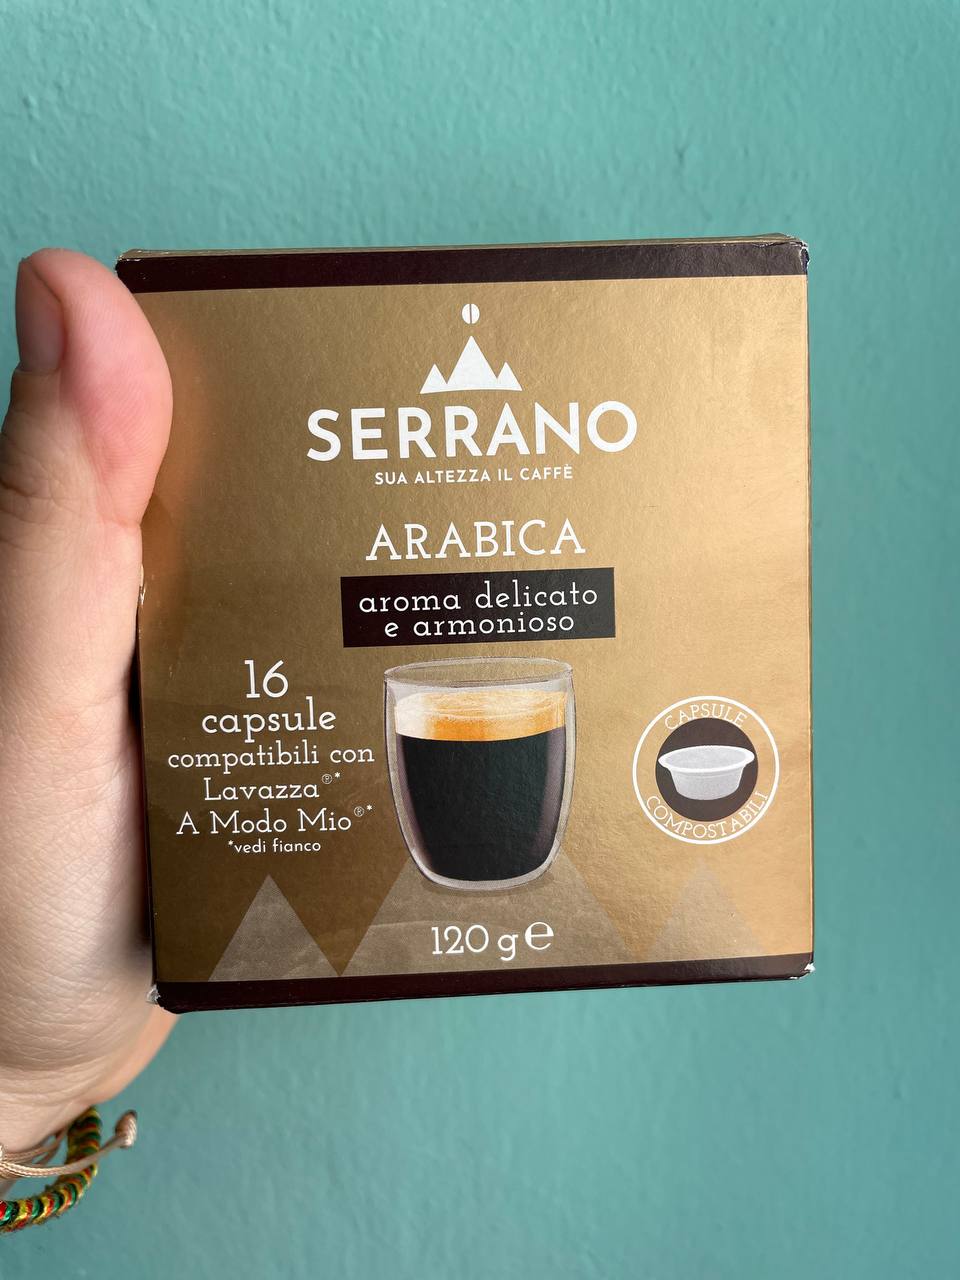 Caffè Serrano – Arabica aroma delicato e armonioso